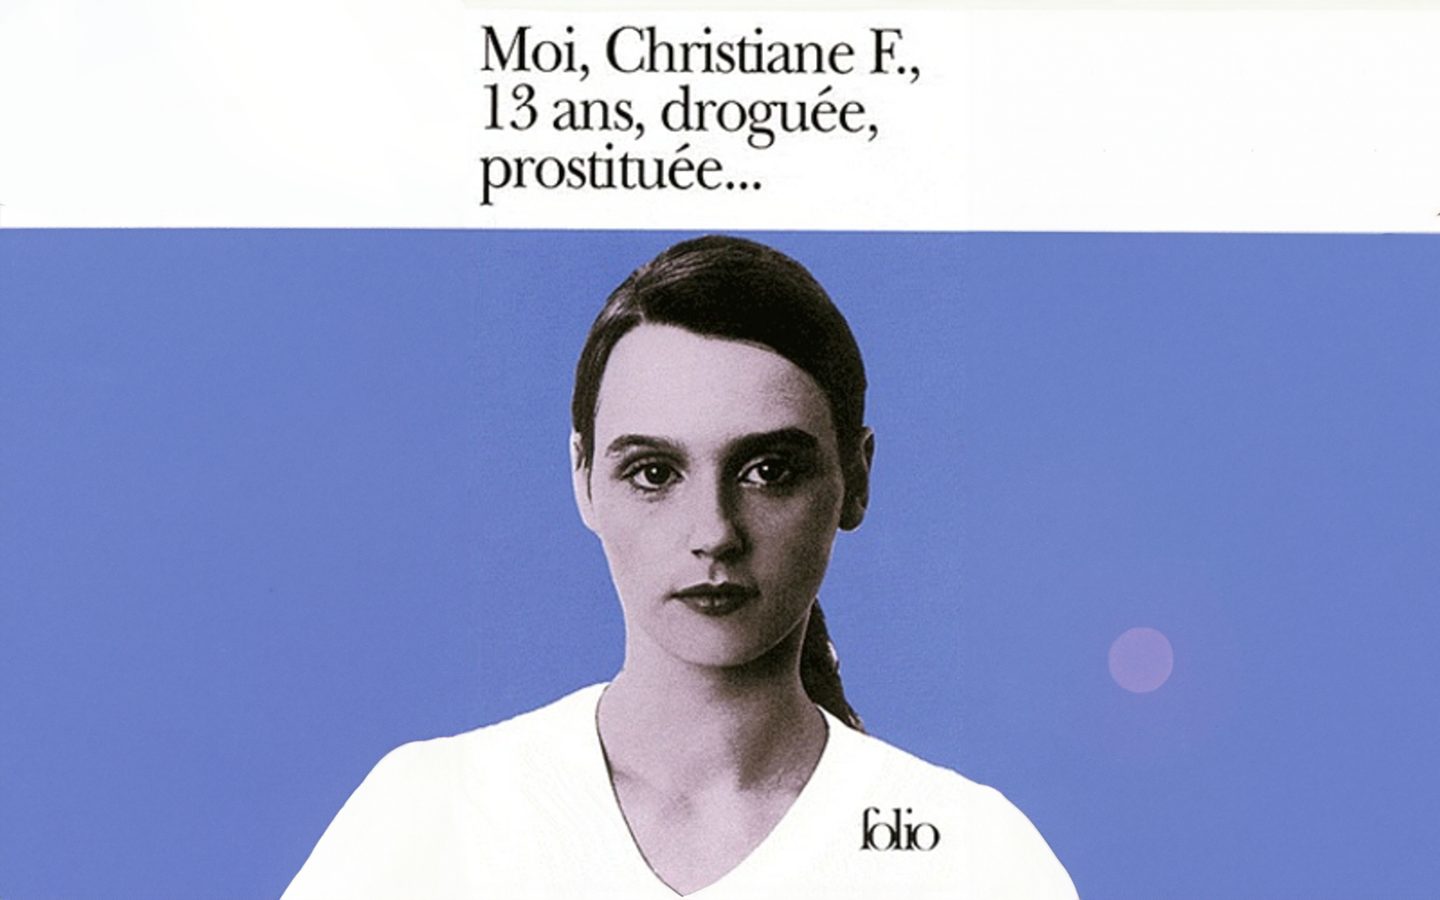 Couverture du livre "Moi, Christiane F, droguée, prostituée..." aux éditions Folio + complétion par IA générative Adobe